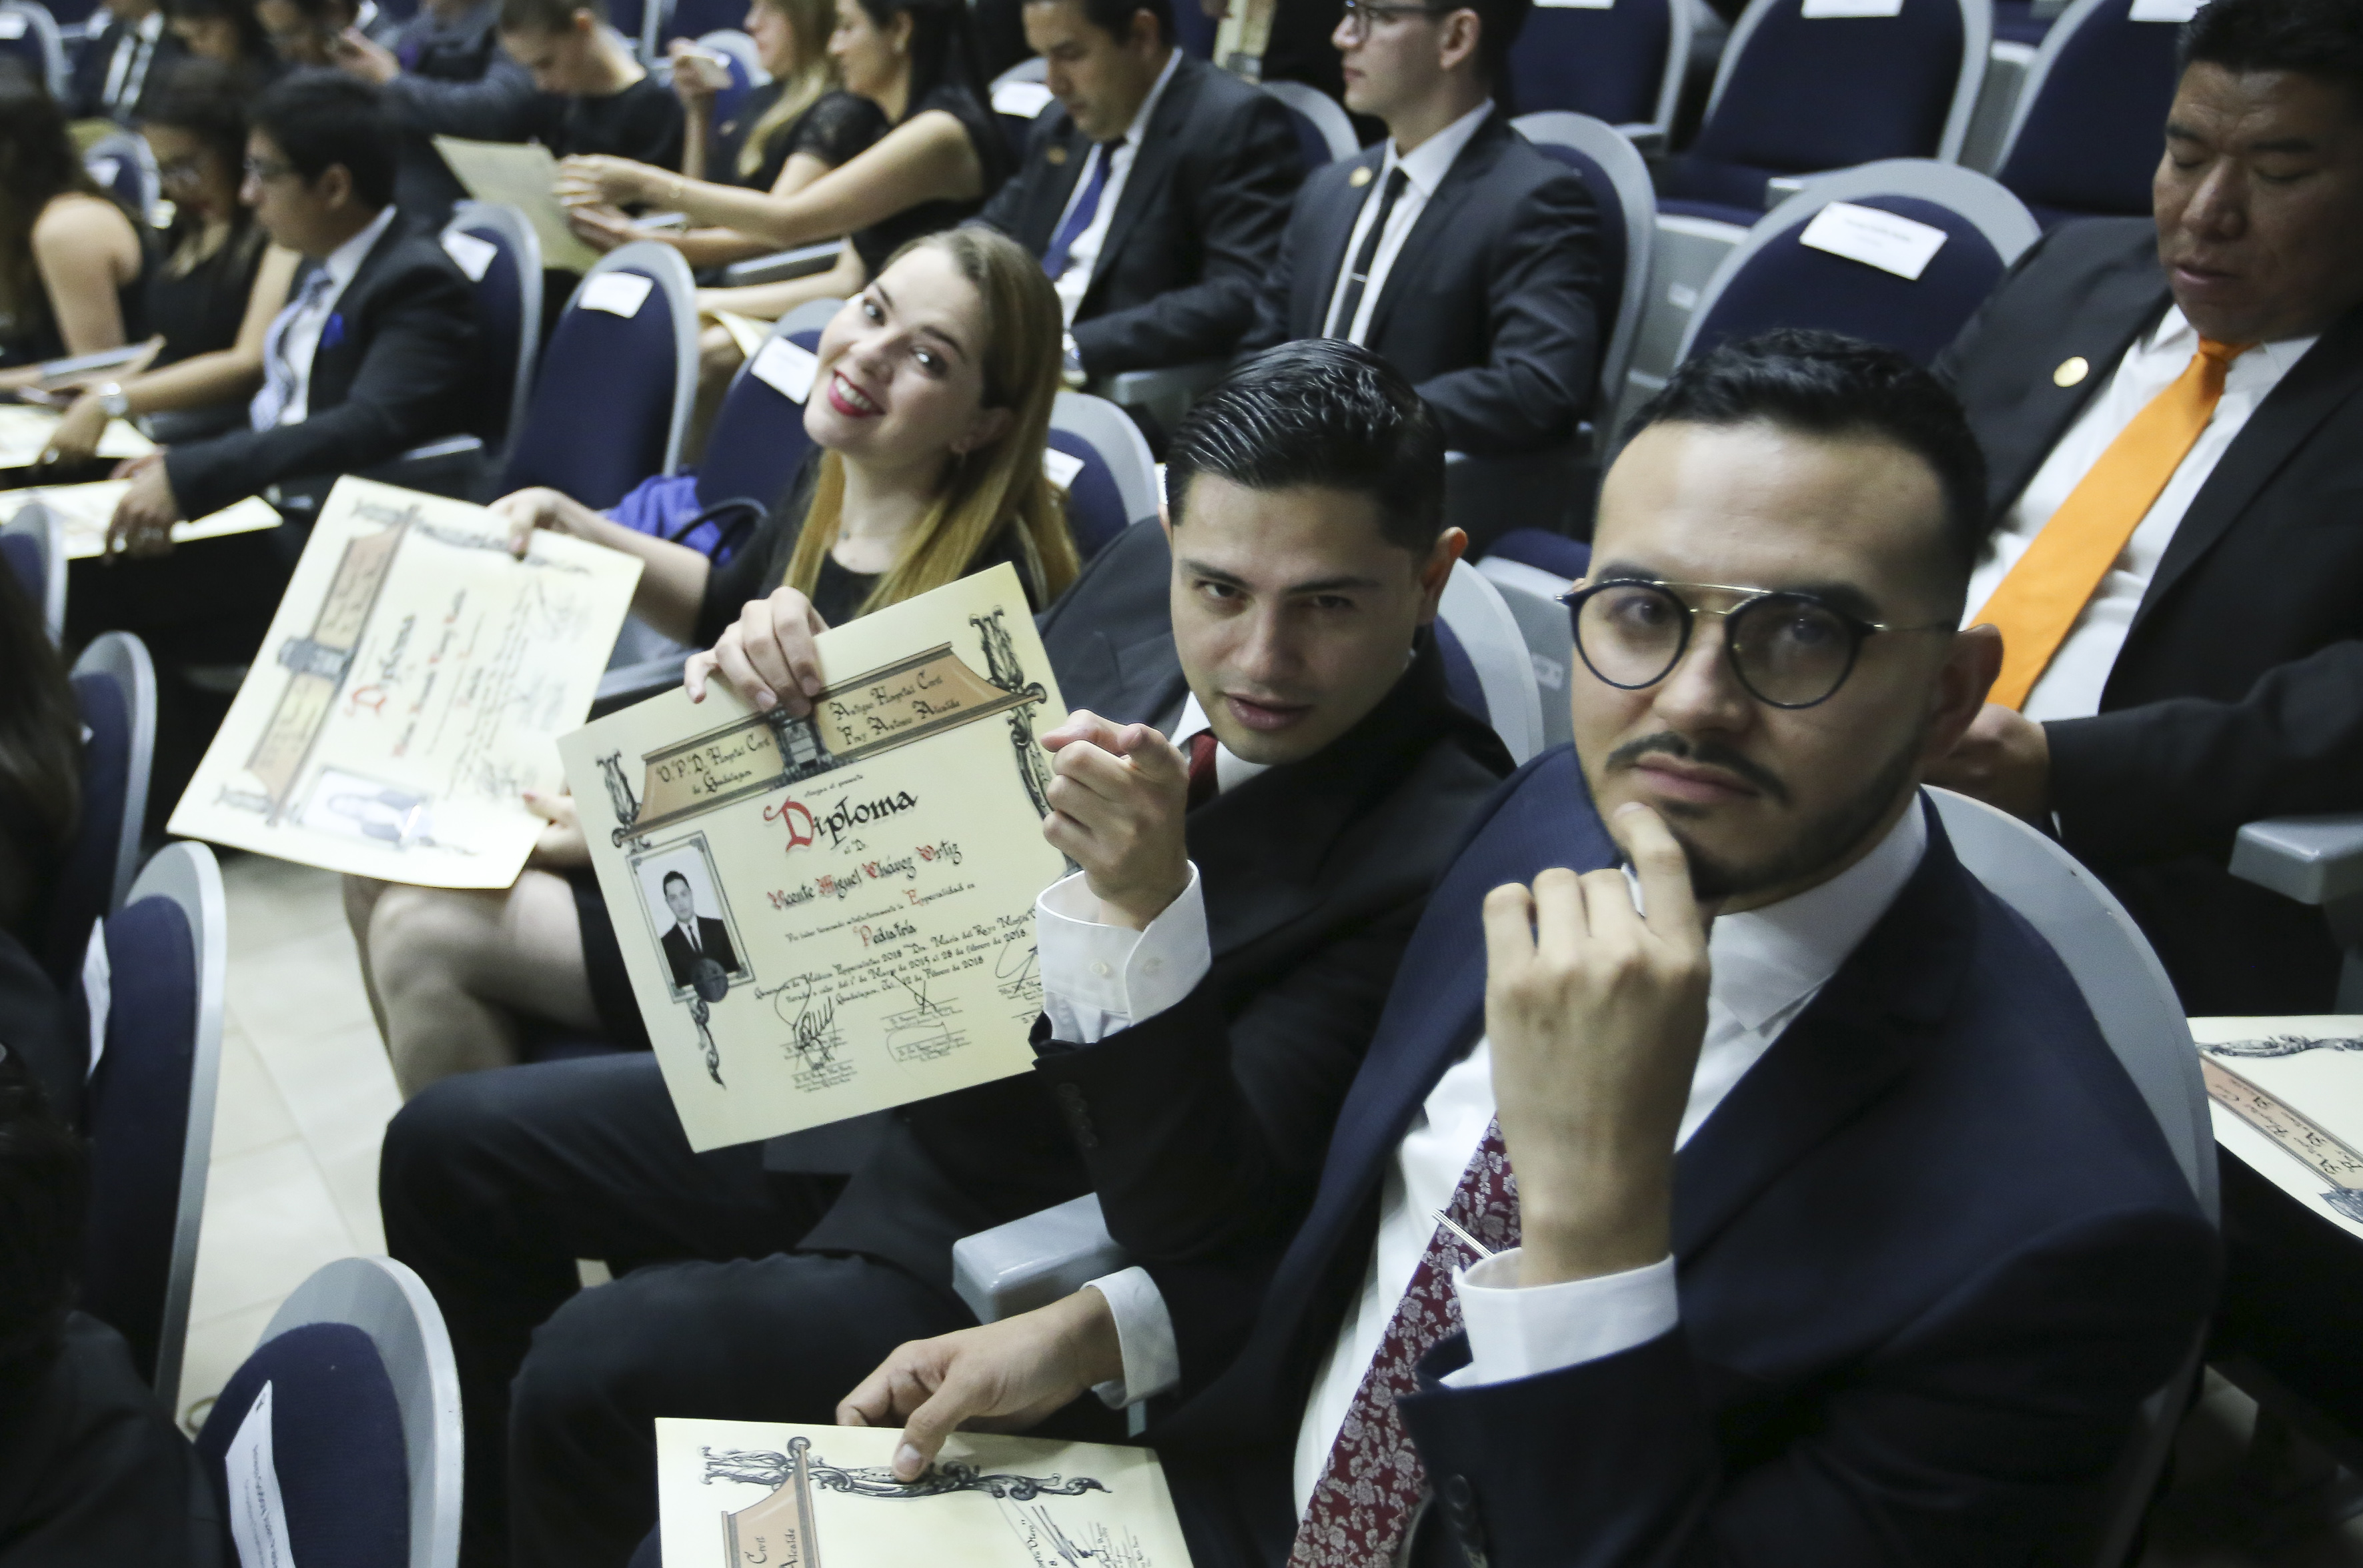 Alumnos exhibiendo el diploma recibido desde sus butacas